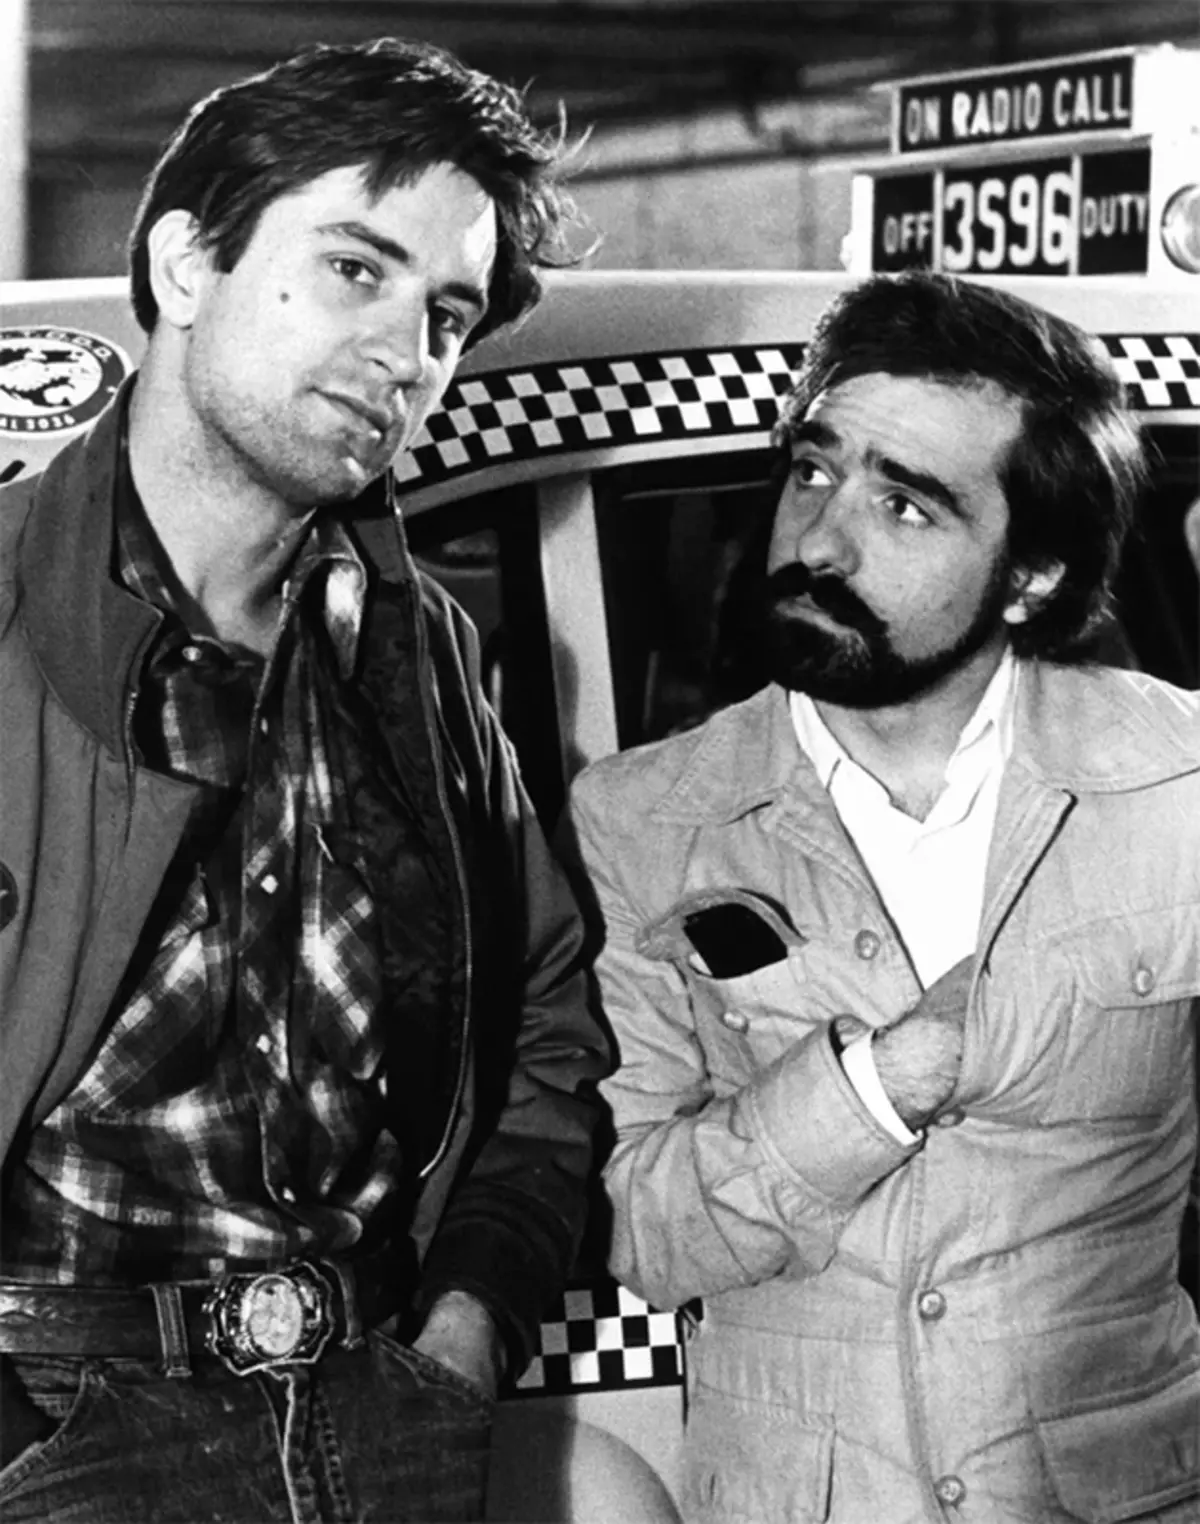 Zuzeneko hizketa: Martin Scorsese-k manifestua argitaratu zuen zinemaren artearen defentsan 1083_2